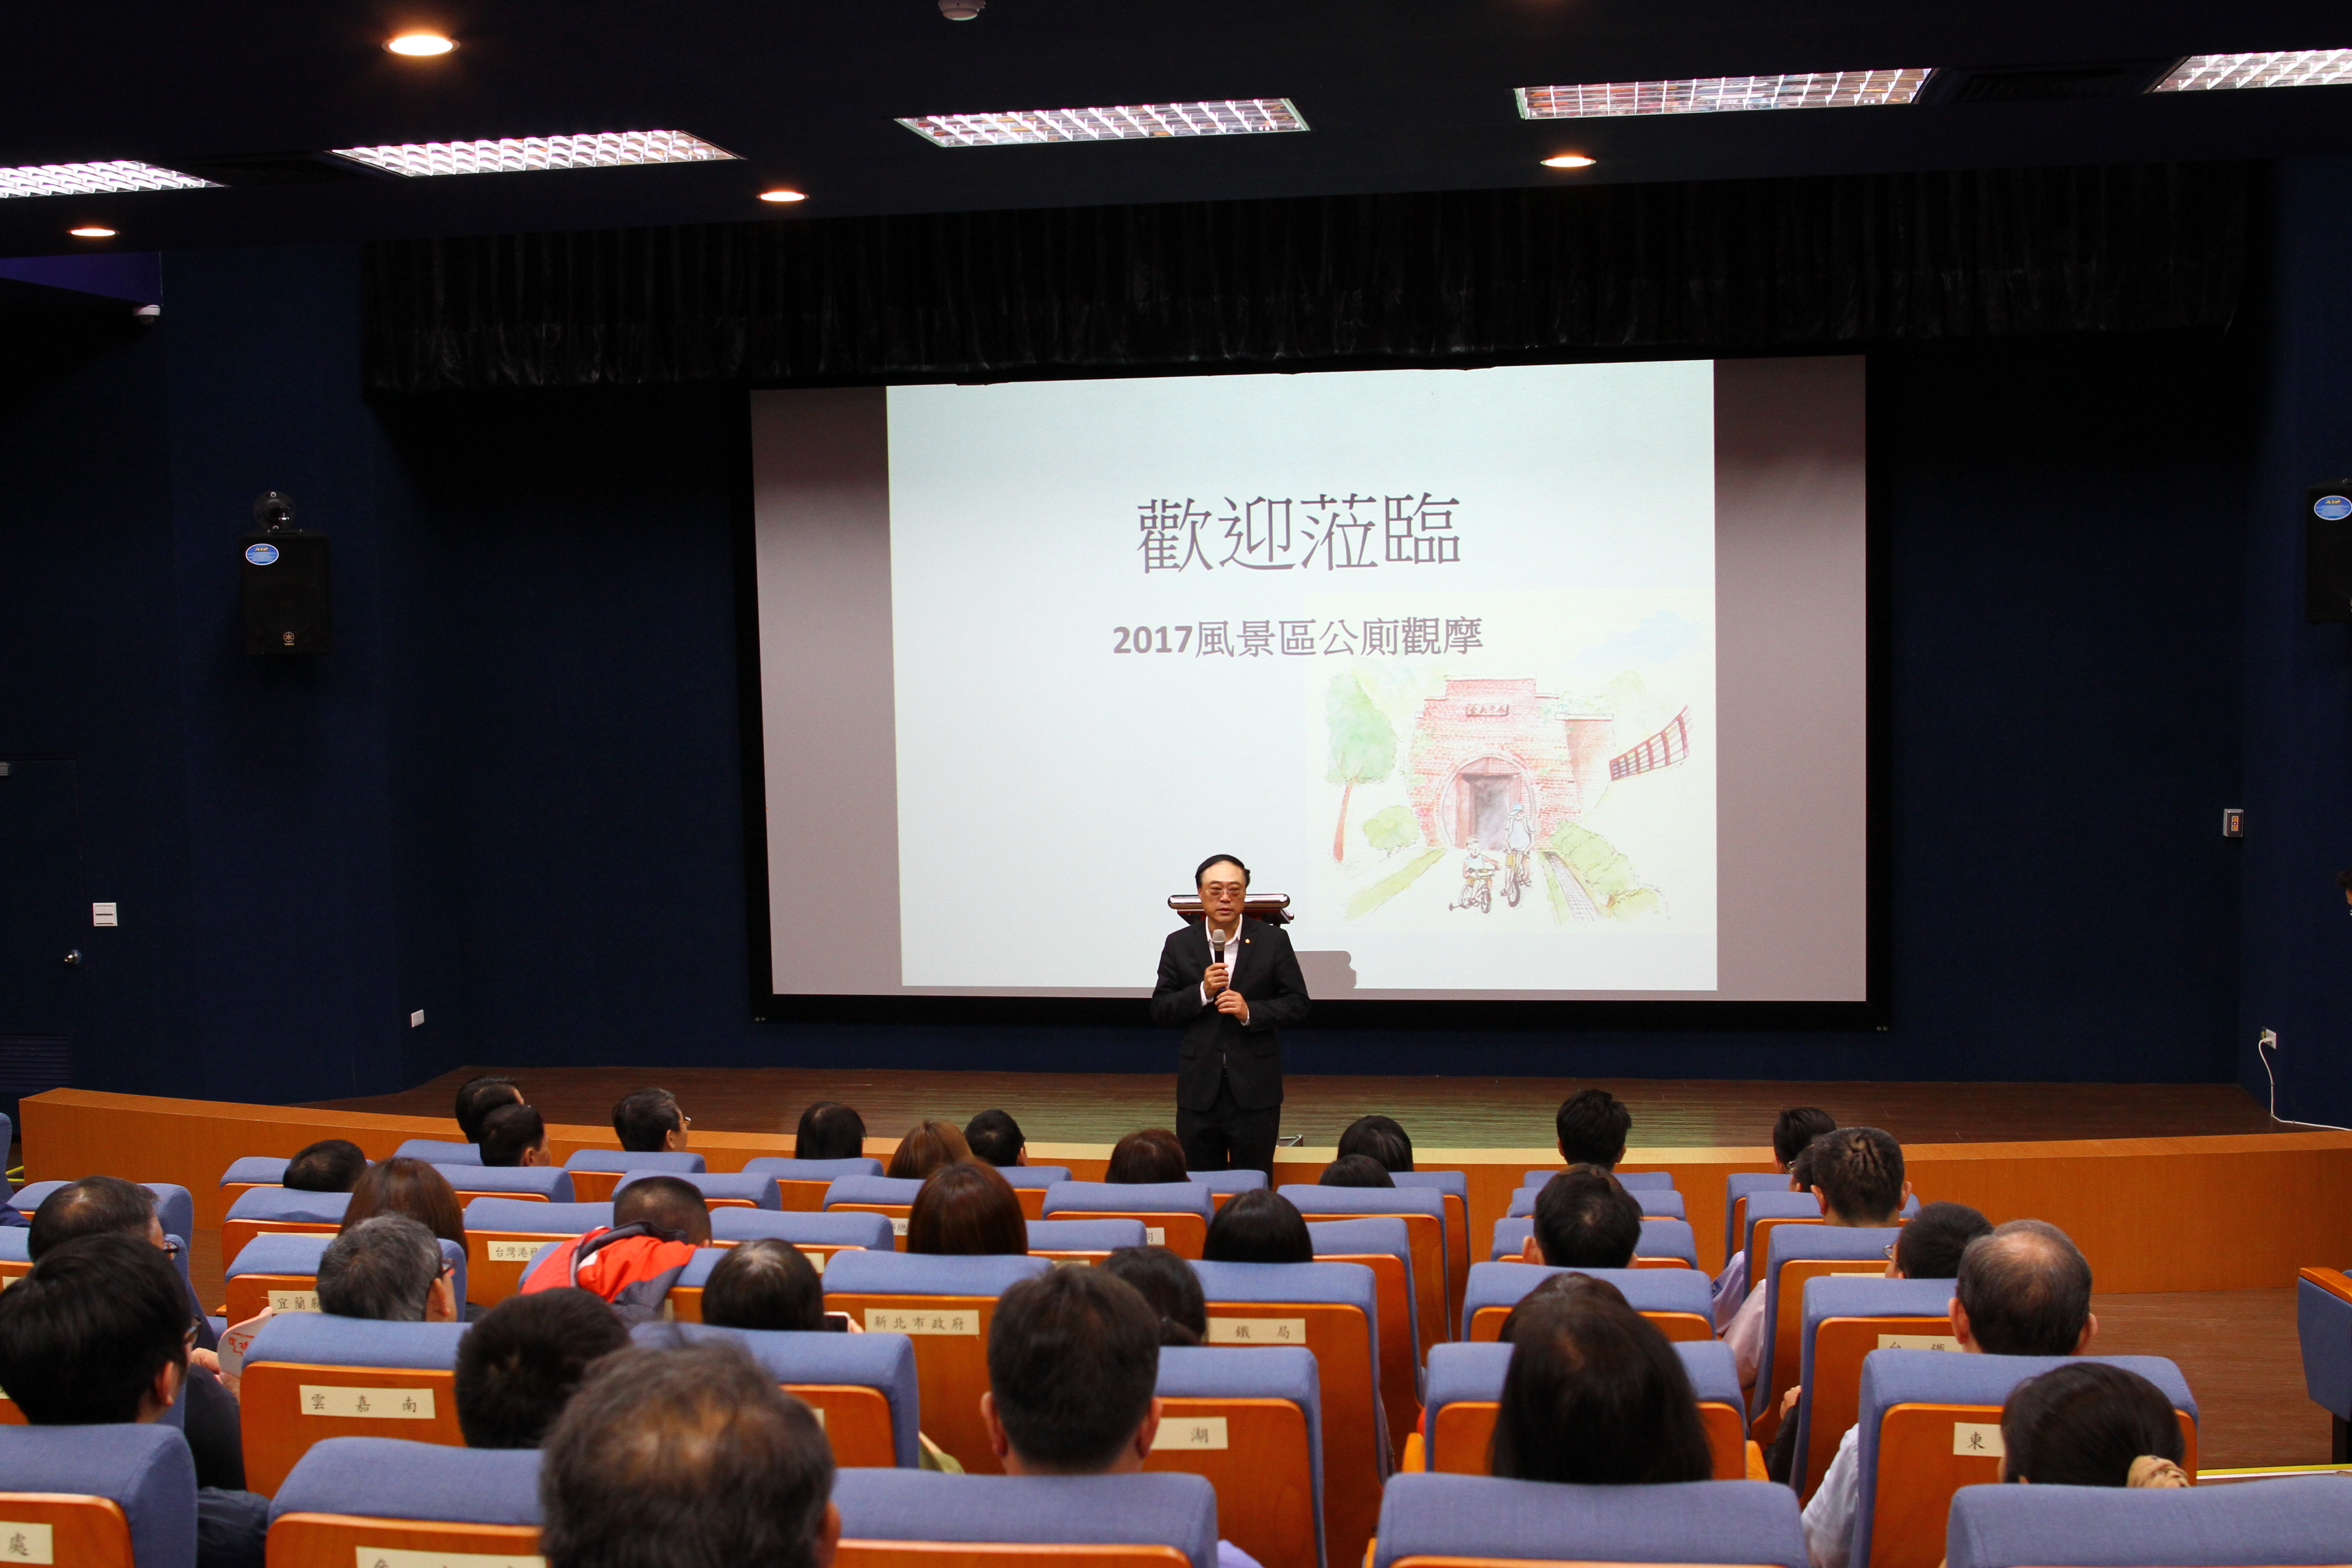 Mr. Zhou Yonghui ผู้อำนวยการสำนักงานการท่องเที่ยวสนับสนุนสำนักงานบริหารจัดการห้องน้ำสาธารณะด้วยแนวคิด 6S